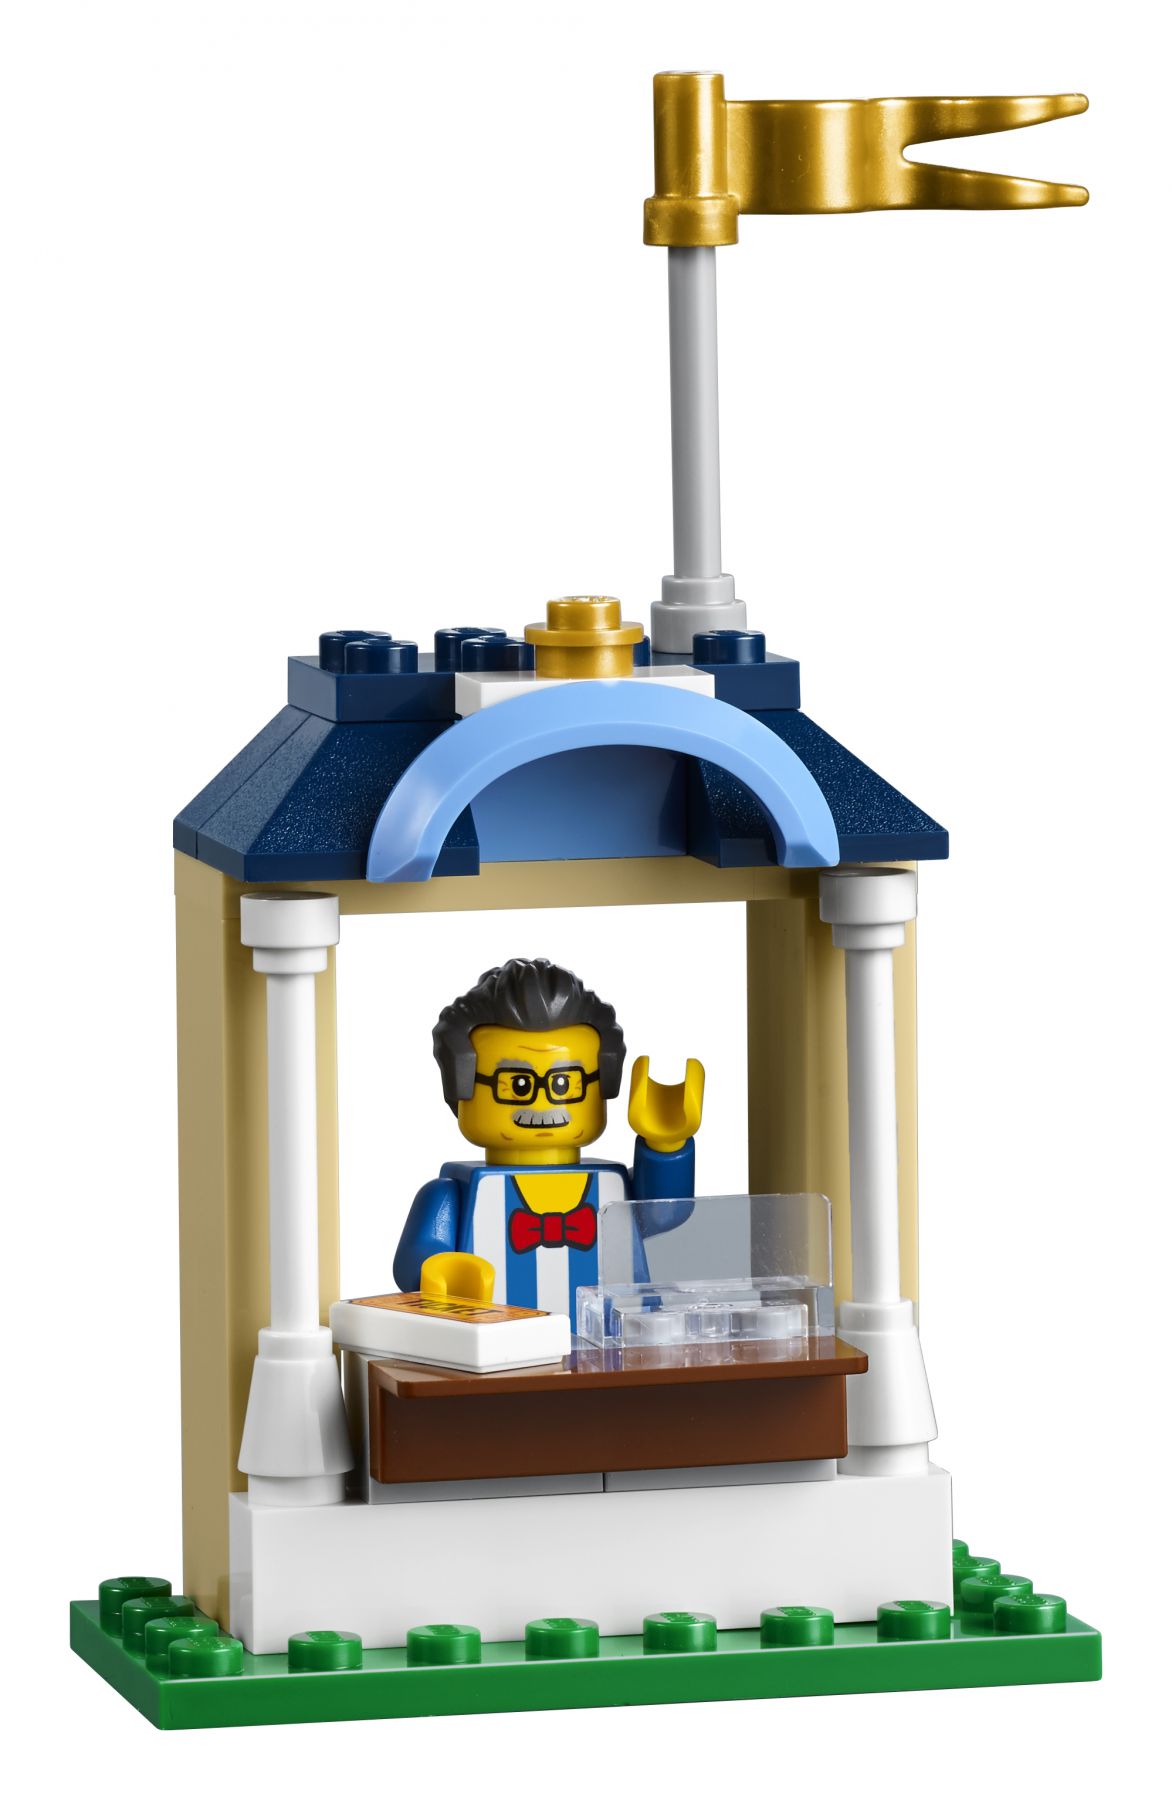 LEGO Advanced Models 10257 Karussell LEGO_10257_Fairground_Carousel_Front_02.jpg